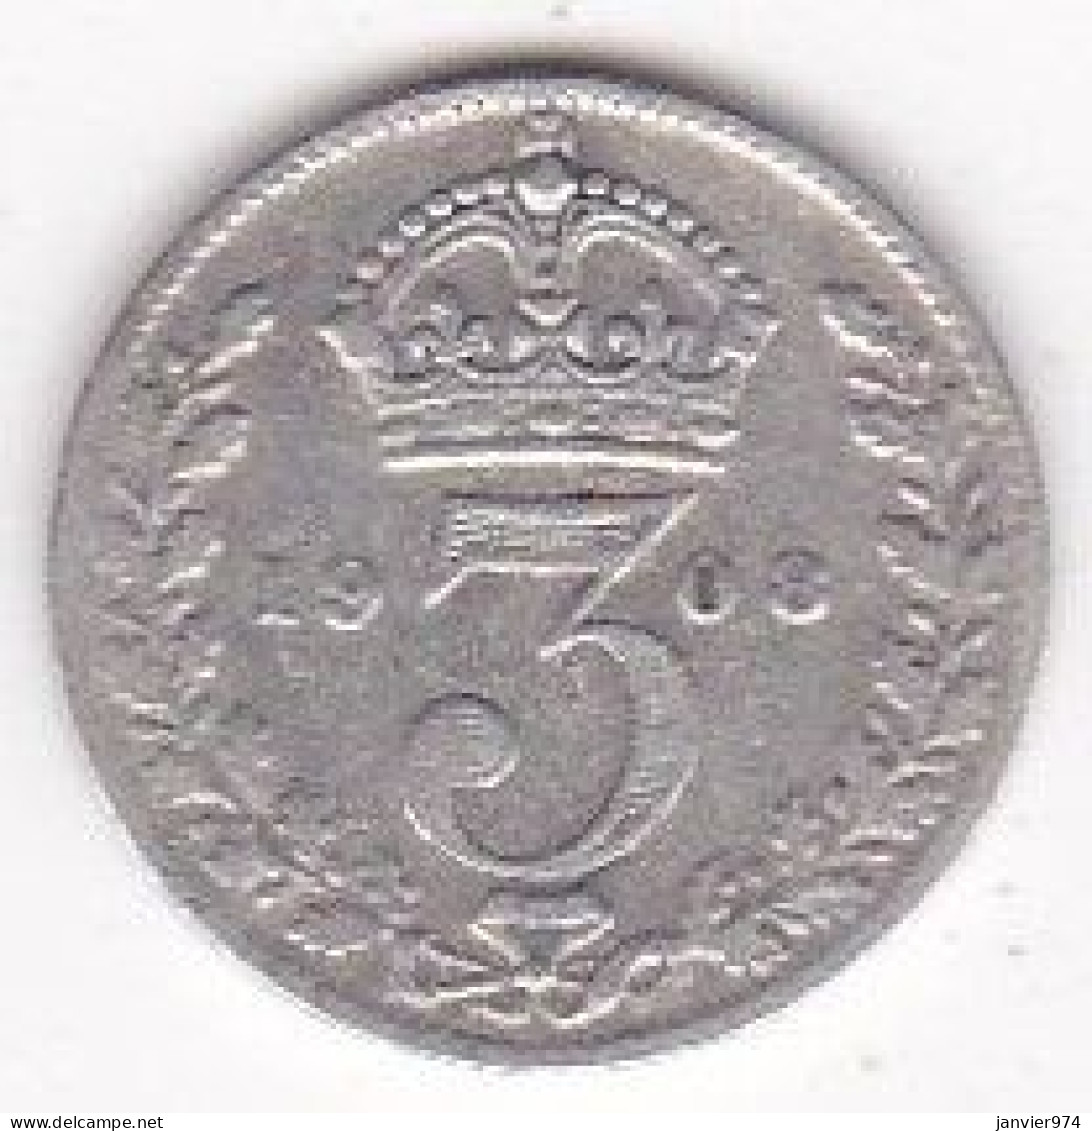 Grande Bretagne. 3 Pence 1908 . Edward VII, En Argent , KM# 797 - F. 3 Pence